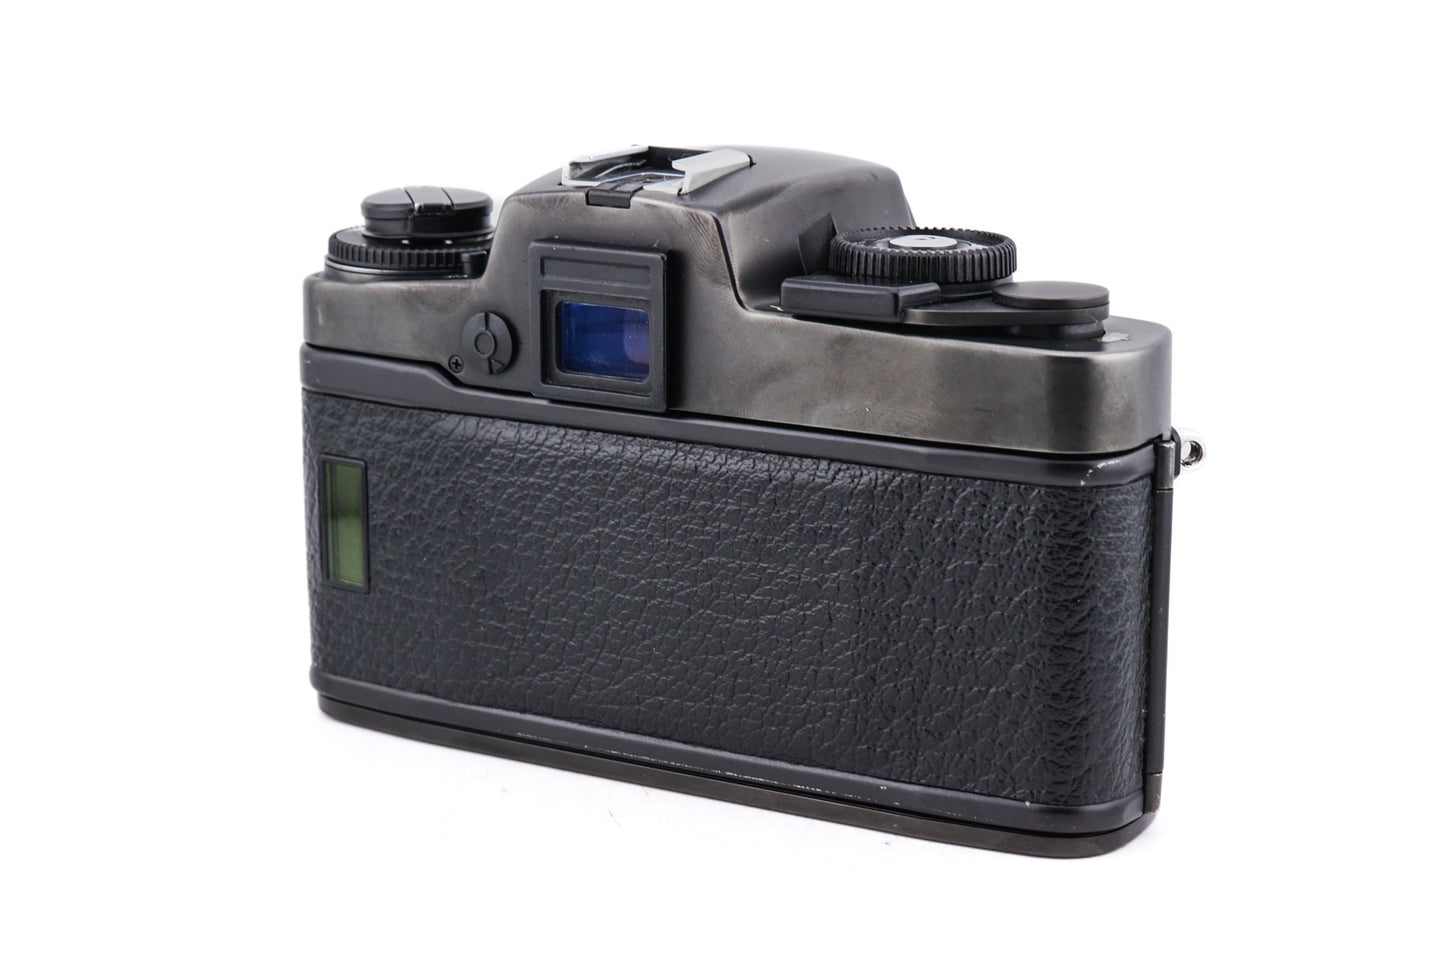 Leica R4 MOT